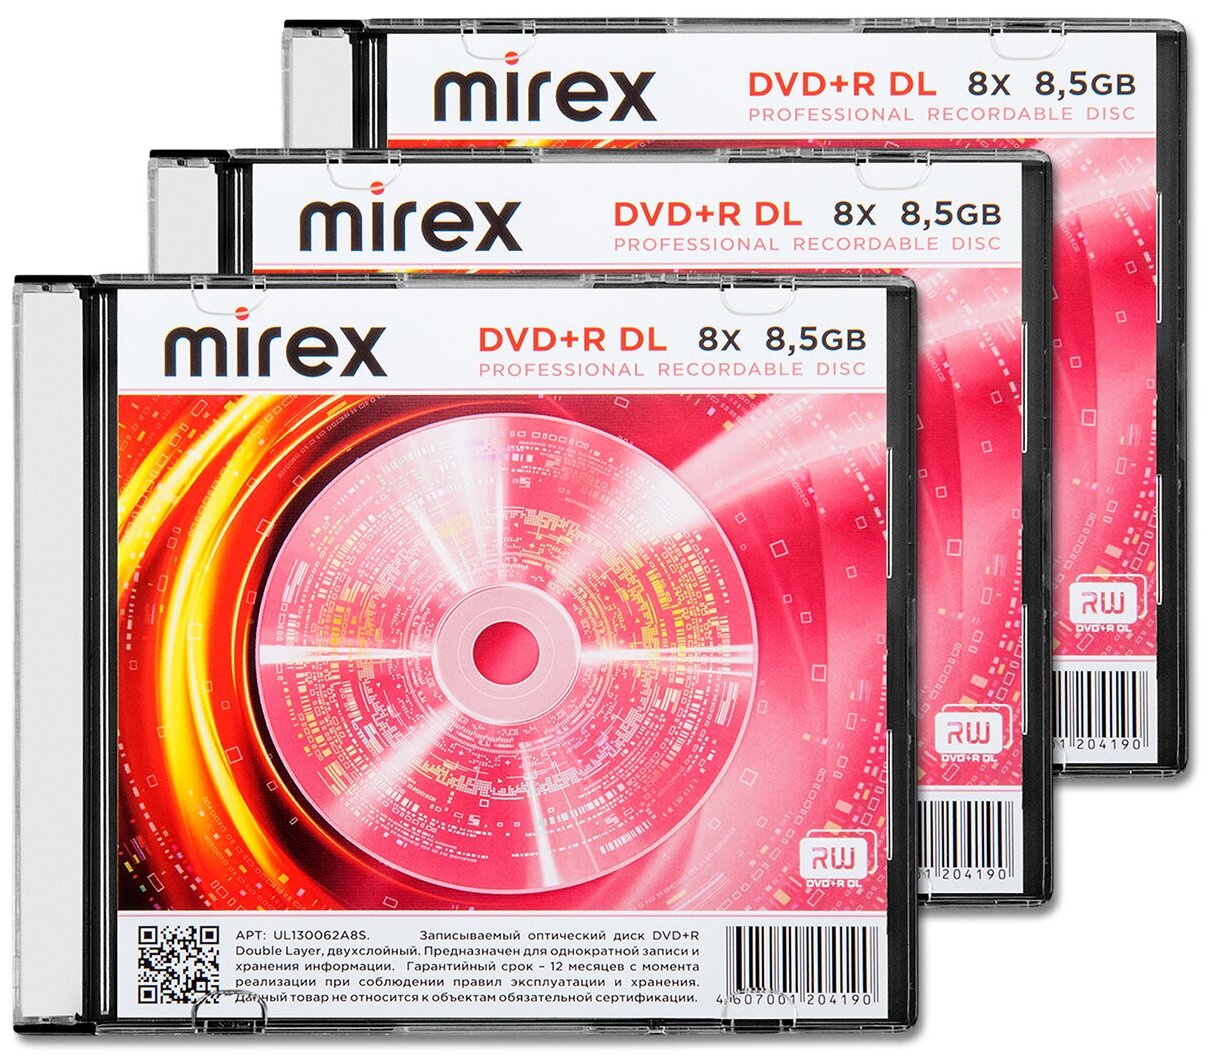 Диск Mirex DVD+R DL 8,5Gb 8x slim, упаковка 3 шт.